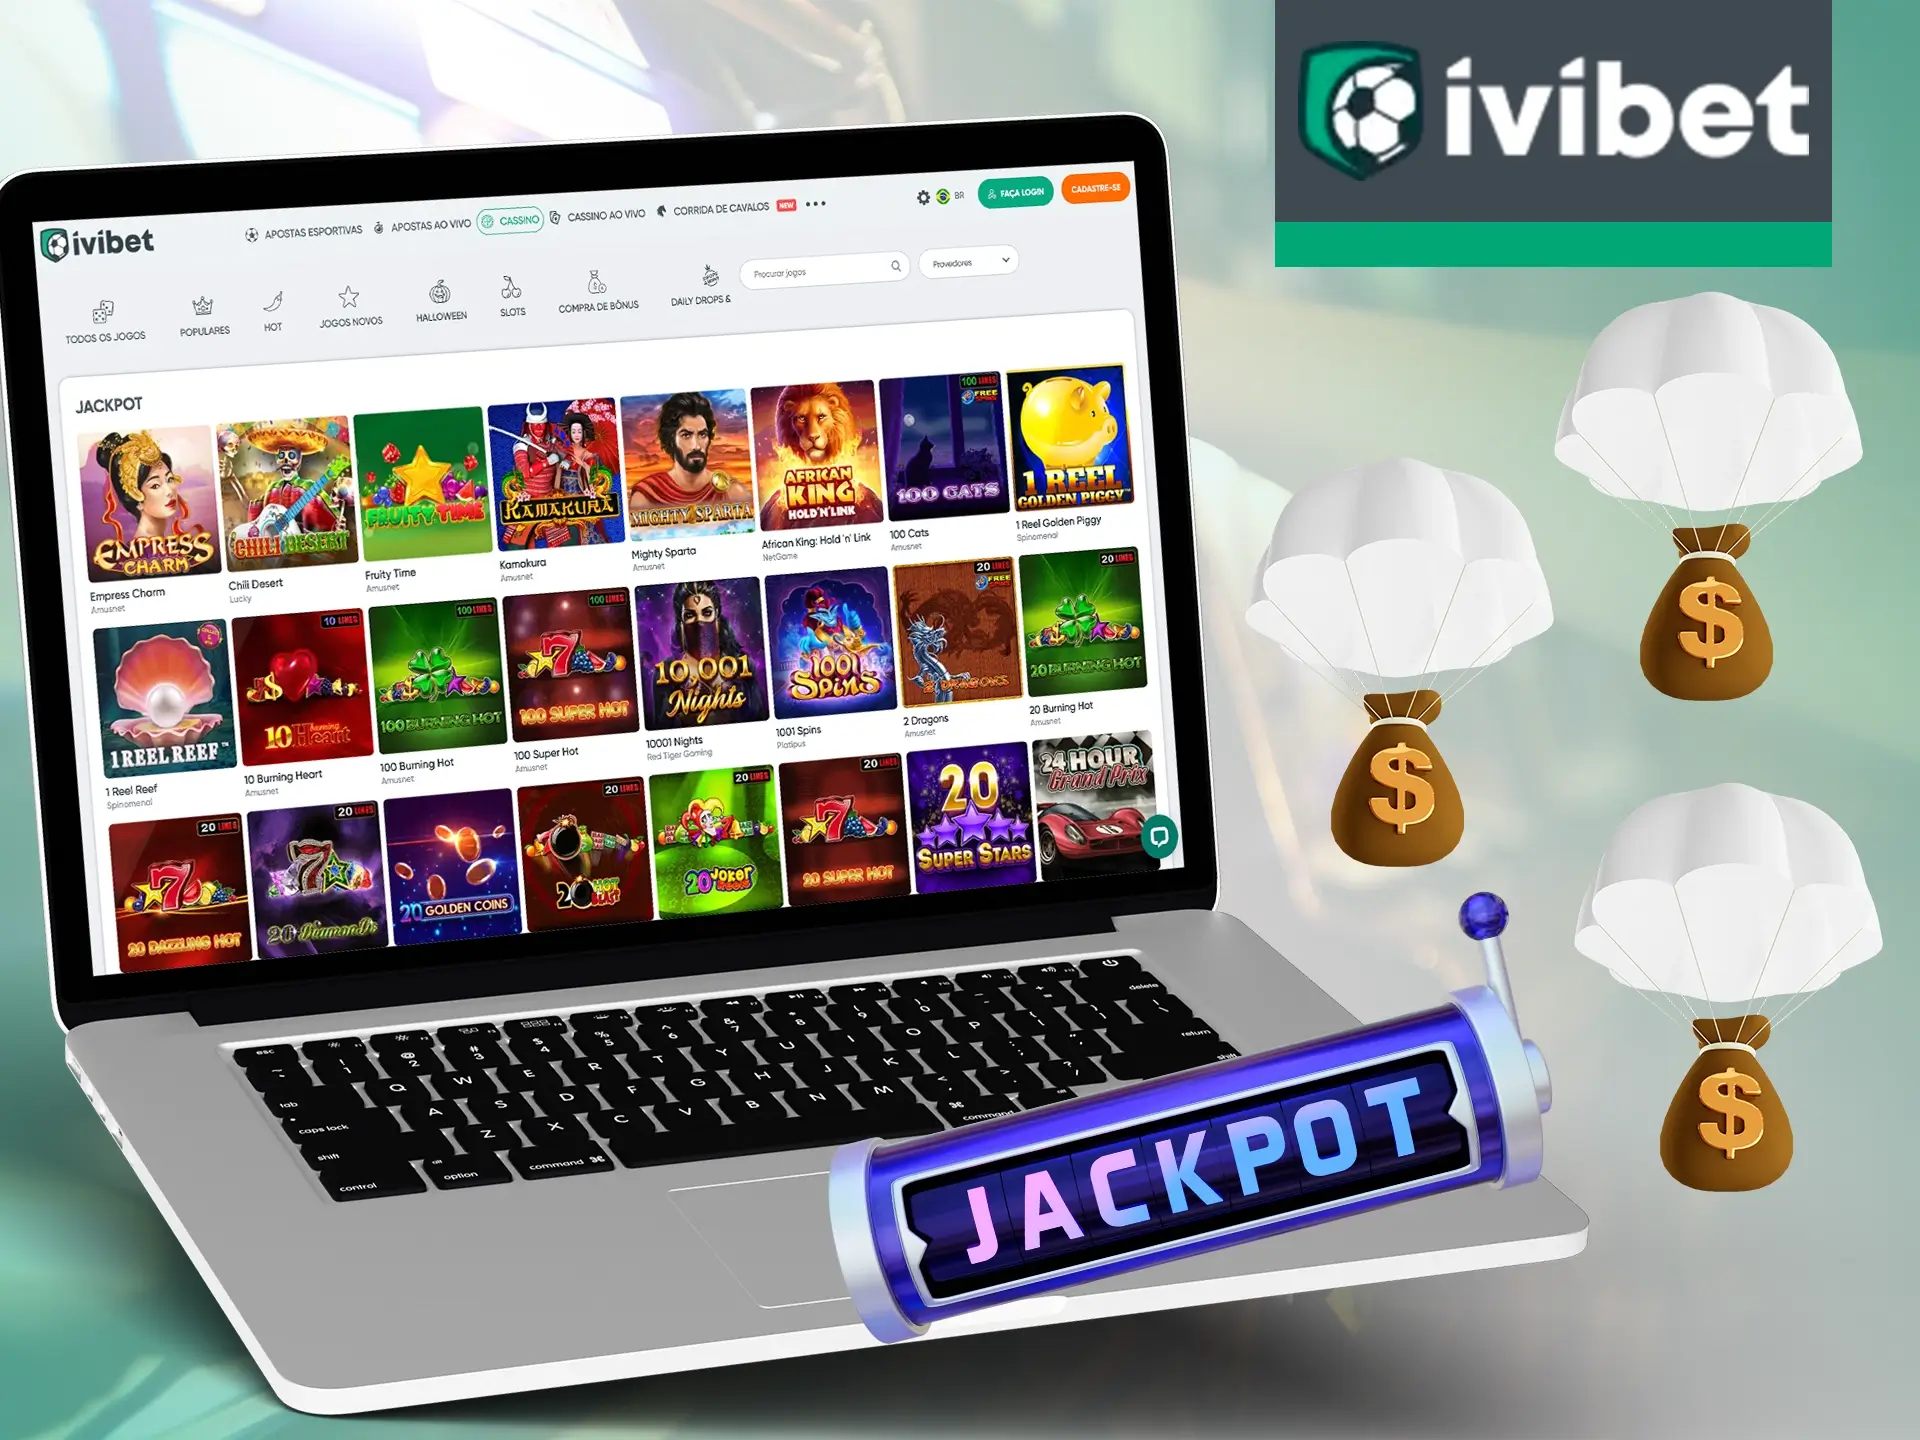 Somente com os jogos de Jackpot você tem uma oportunidade única de ganhar muito no Ivibet Cassino.